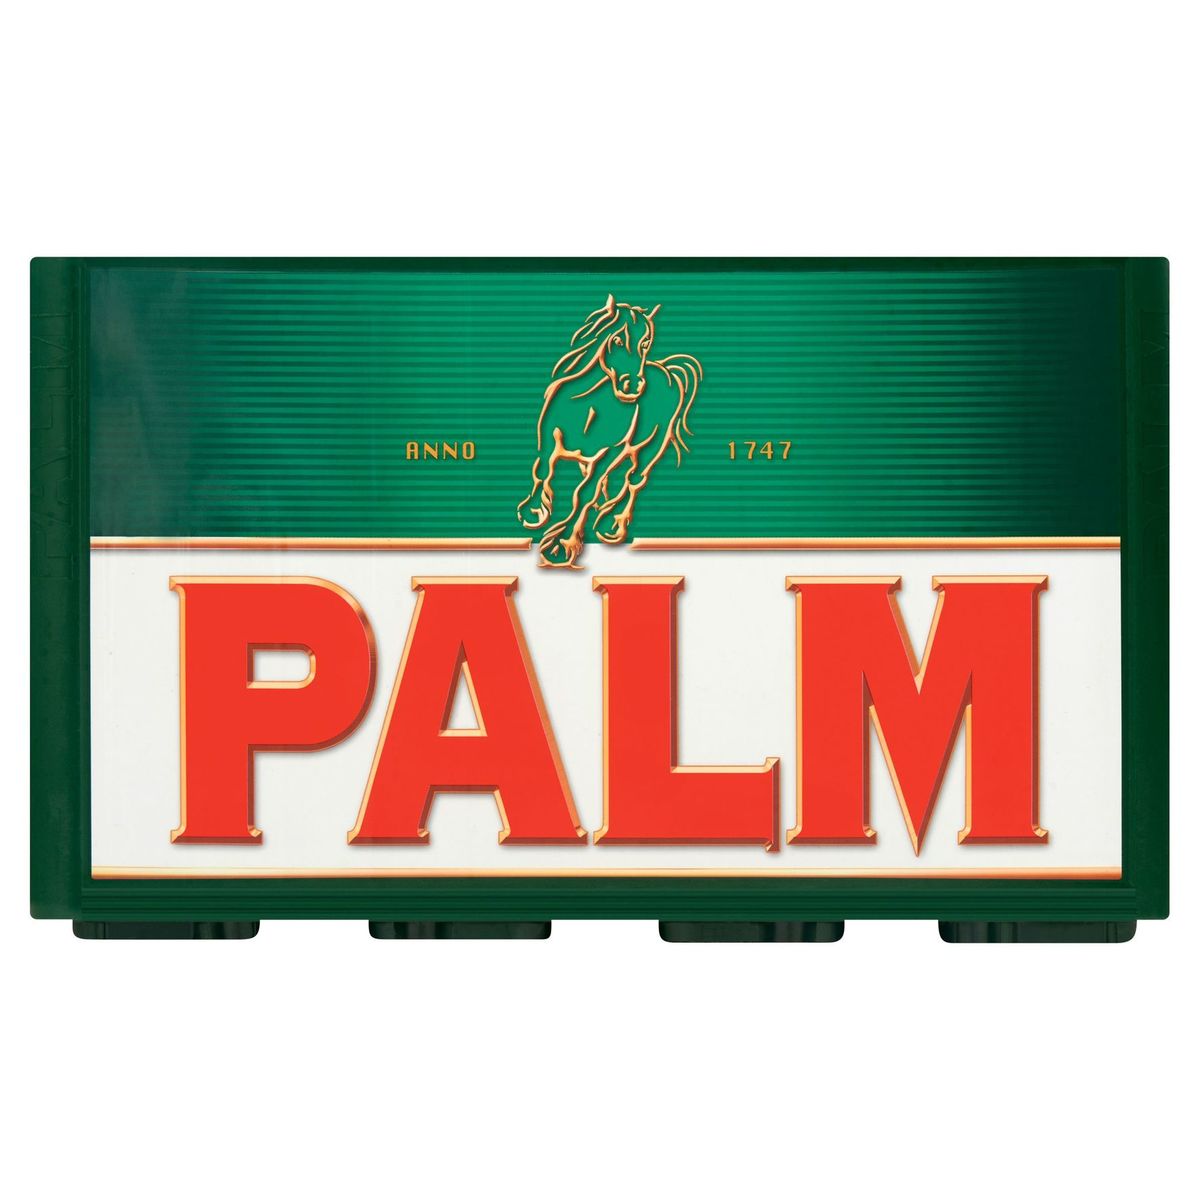 Palm 0.0 Belgisch Amber Bier Krat 6 x (4 x 25 cl)